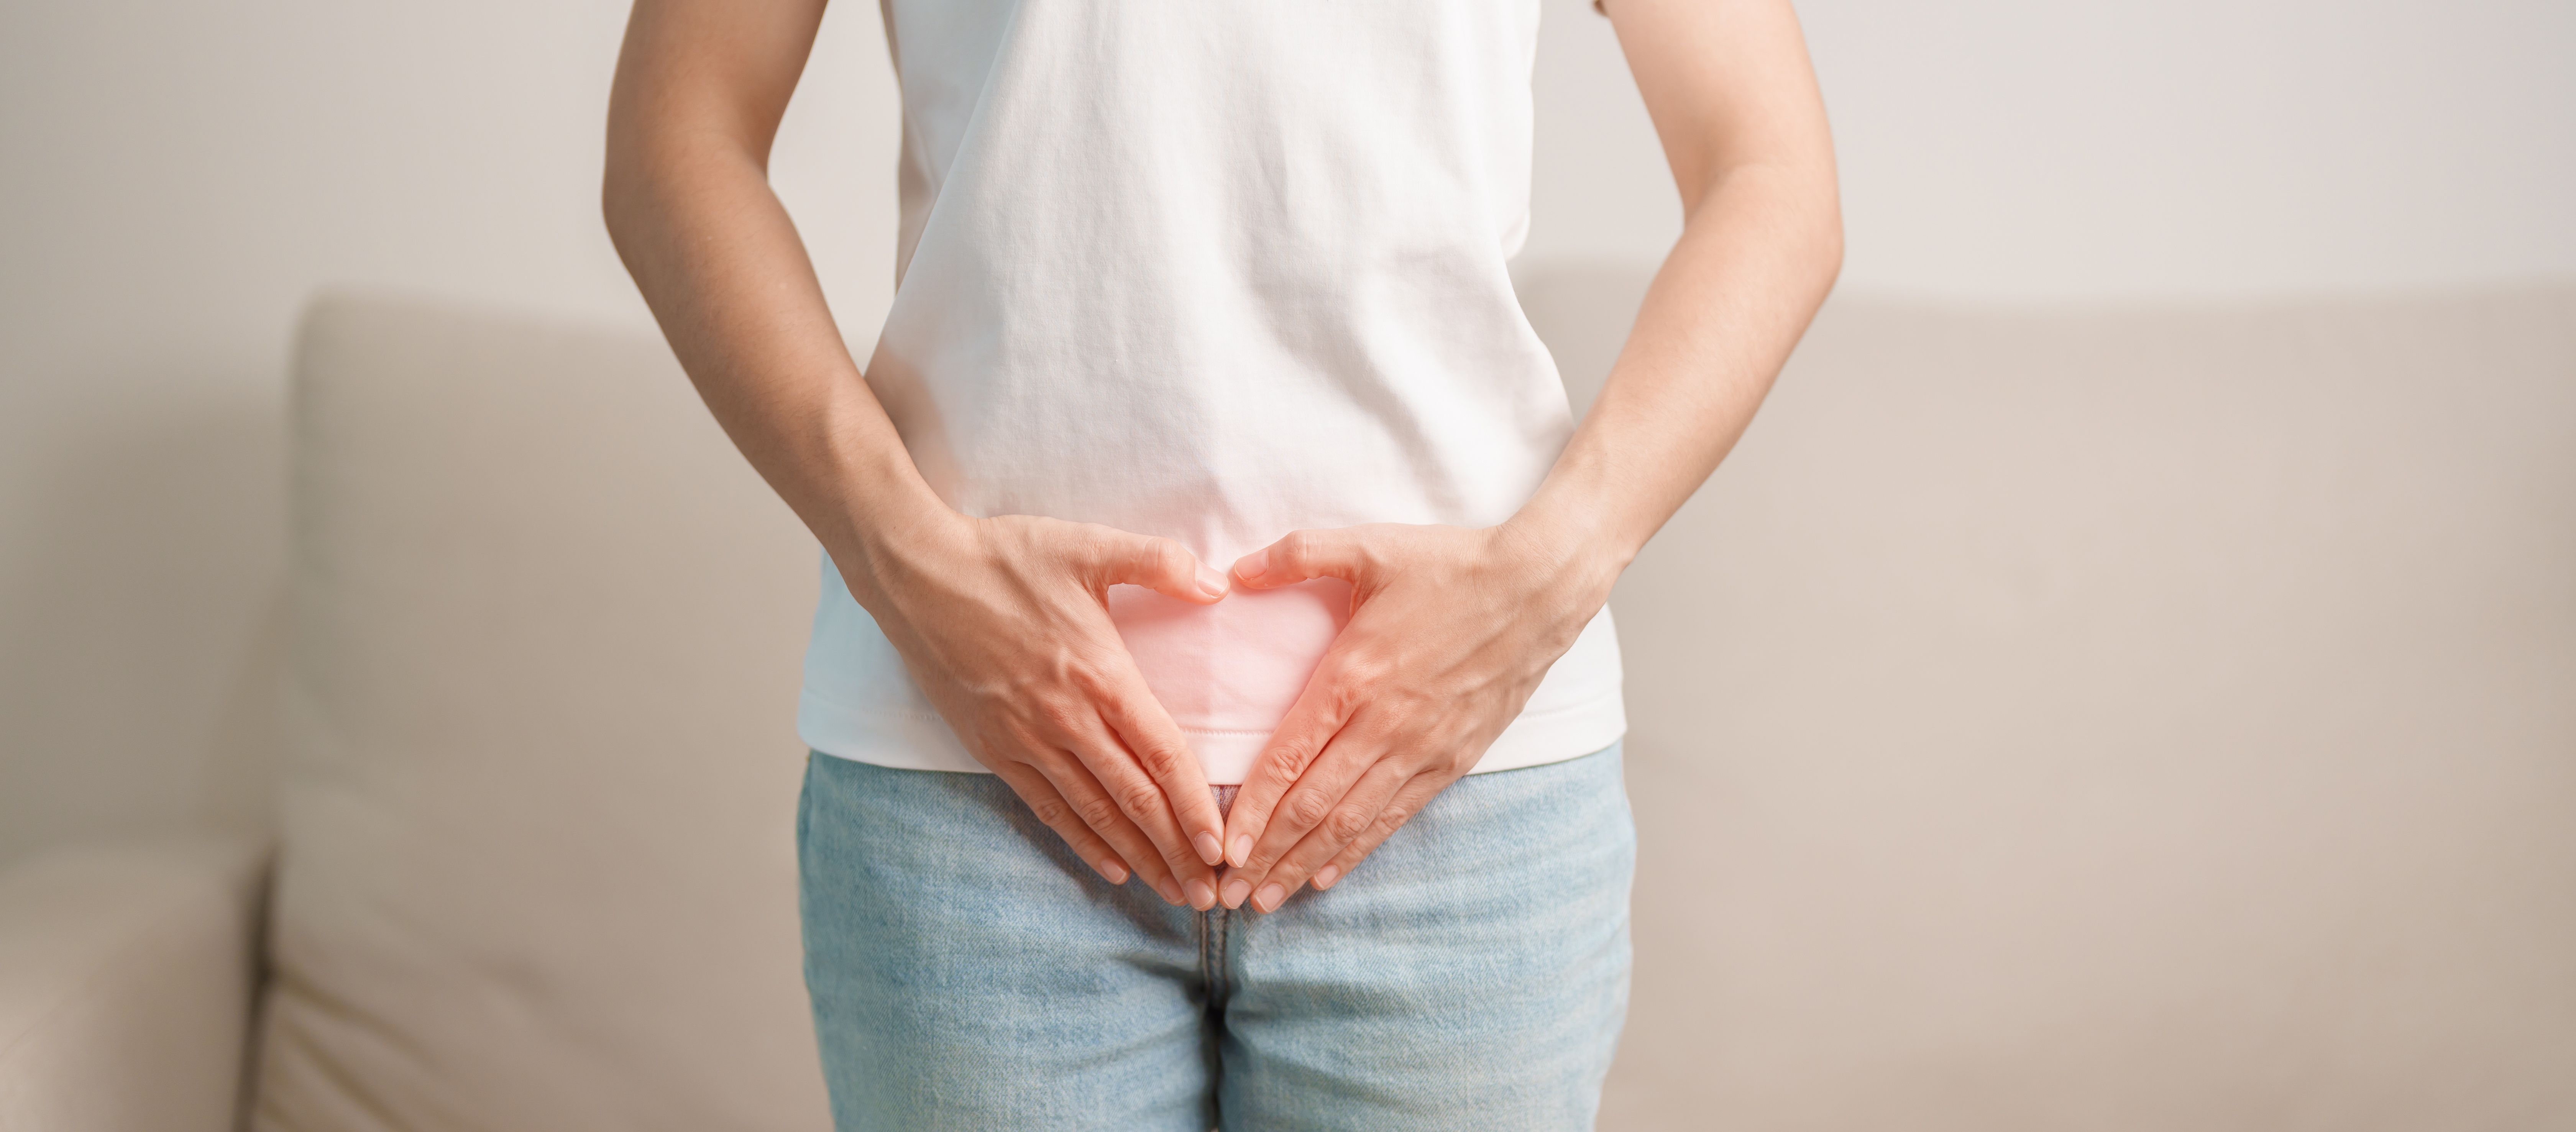 La RFA laparoscópica se asocia con mejores resultados del embarazo en pacientes con fibromas uterinos